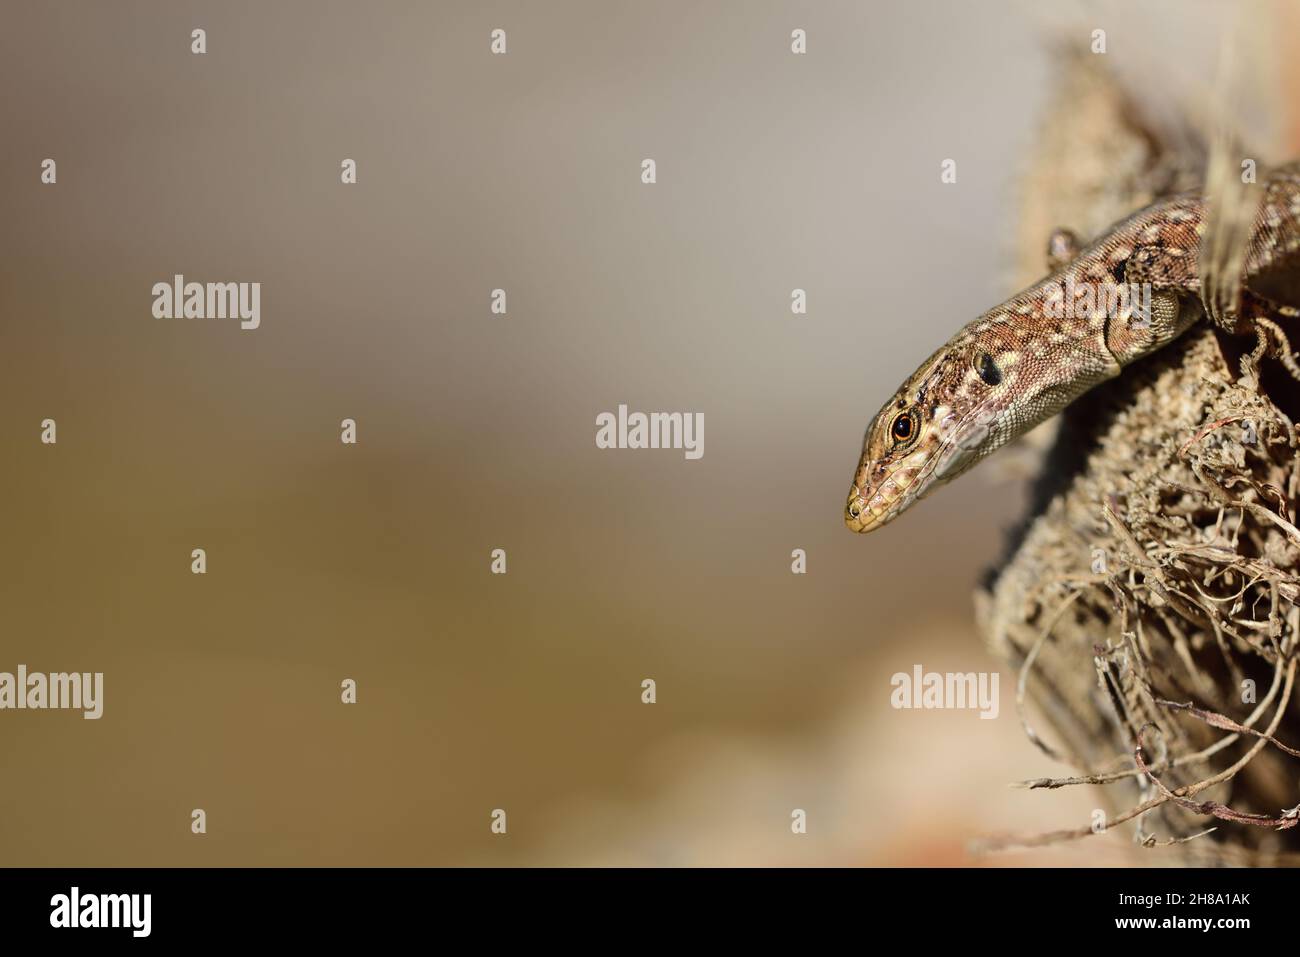 Ein Reptil, eine neugierige Eidechse, blickt von rechts in das Bild, sitzend auf einer Palme. Es gibt viel Platz für Text Stockfoto